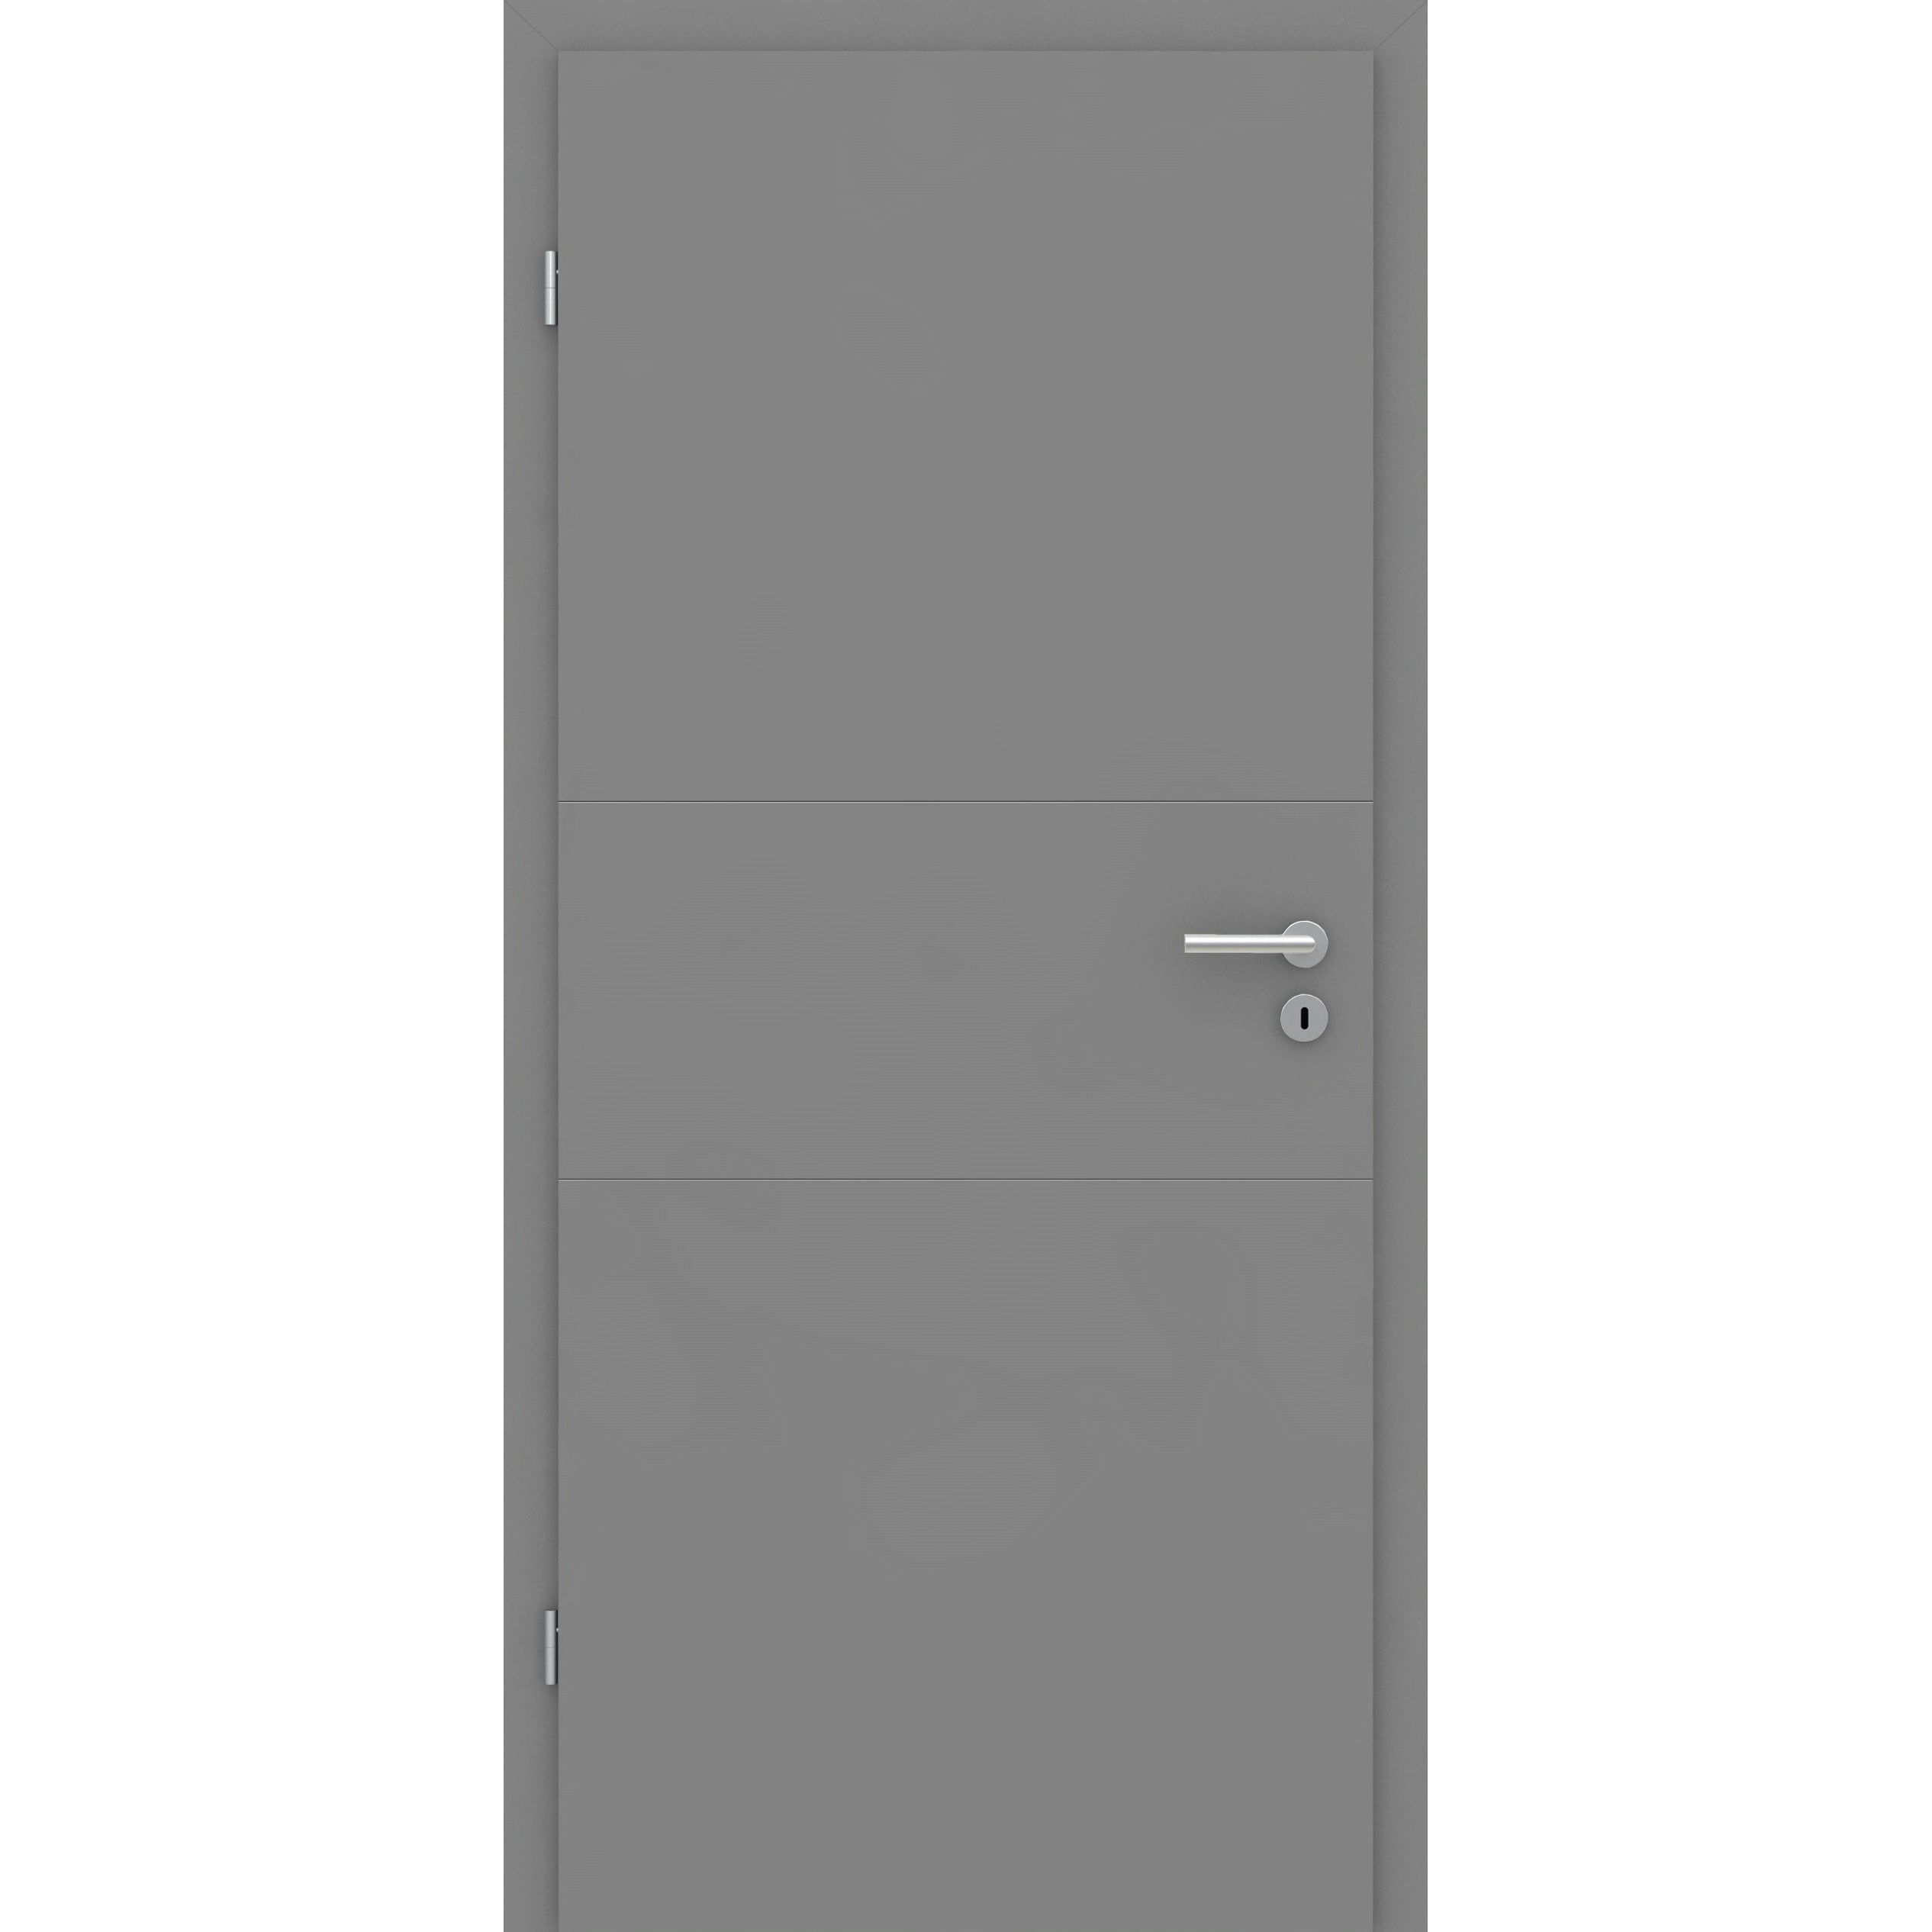 Wohnungseingangstür mit Zarge grau 2 Rillen quer Designkante SK1 / KK3 - Modell Designtür Q27